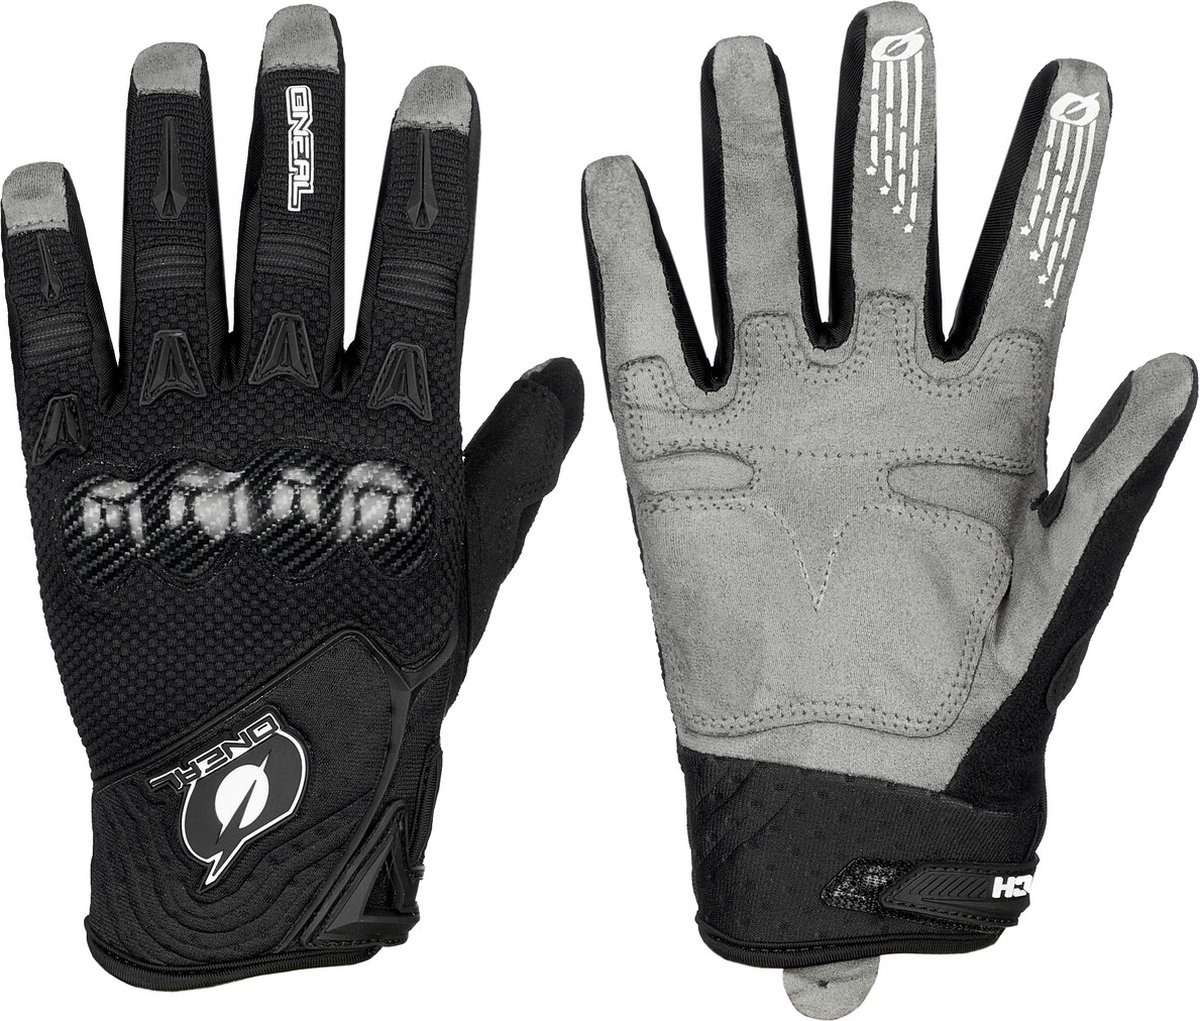 O'Neal Butch Carbon Handschoenen, zwart/grijs Handschoenmaat S